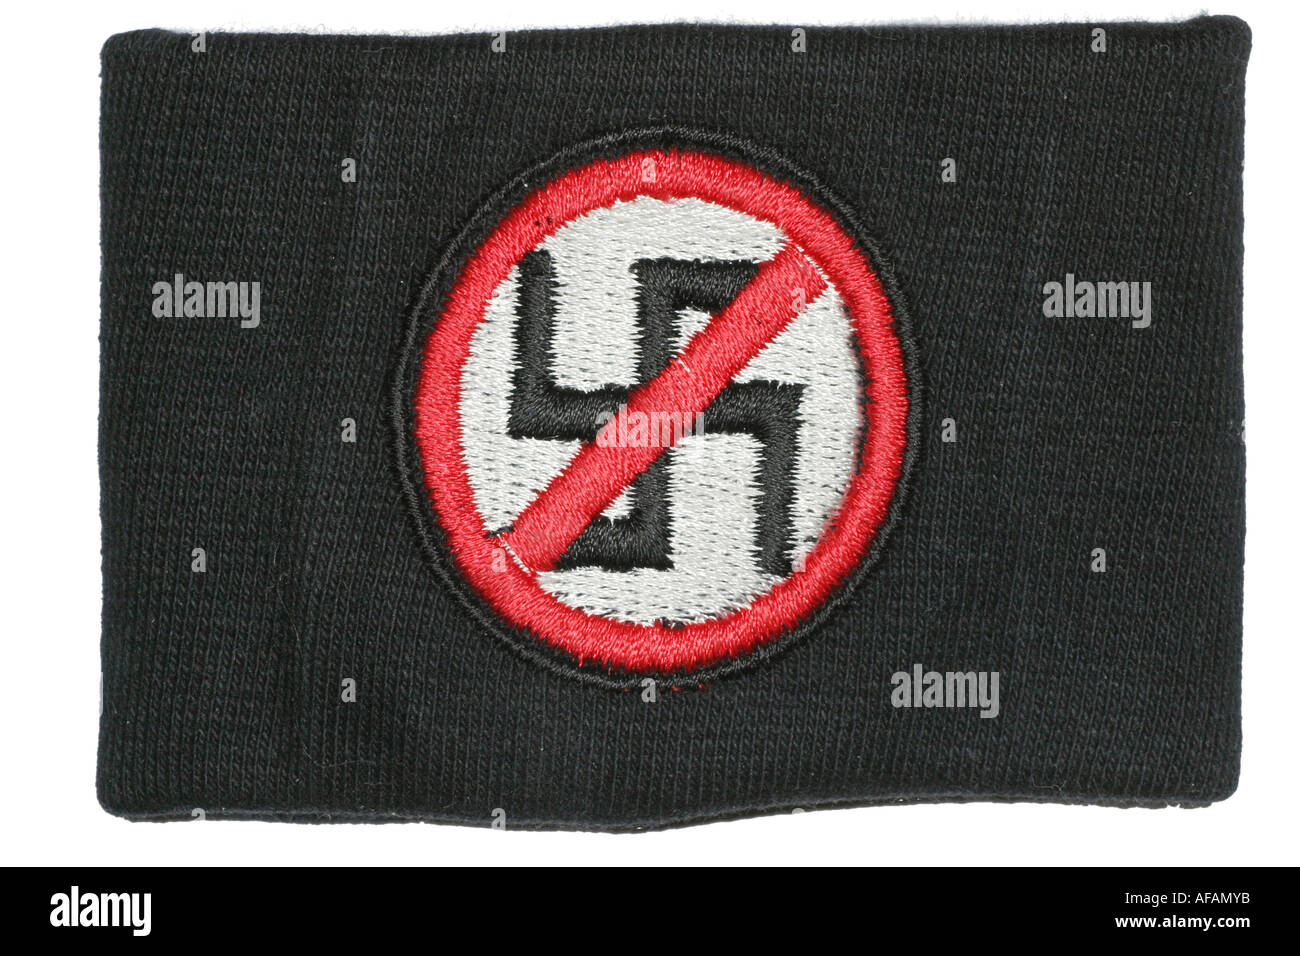 Anti nazi symbol on a sweatband Stock Photo